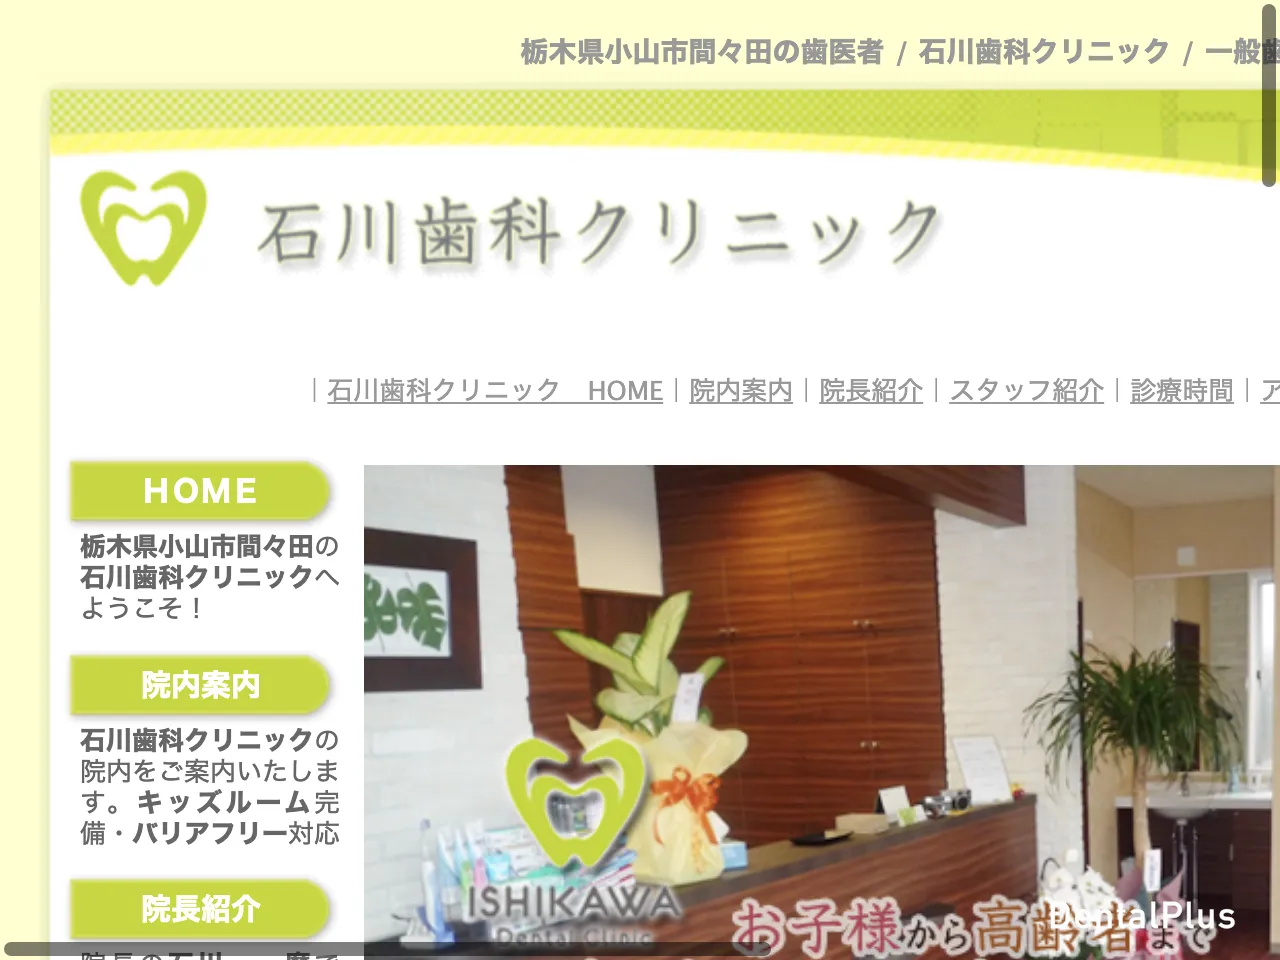 石川歯科クリニックのウェブサイト